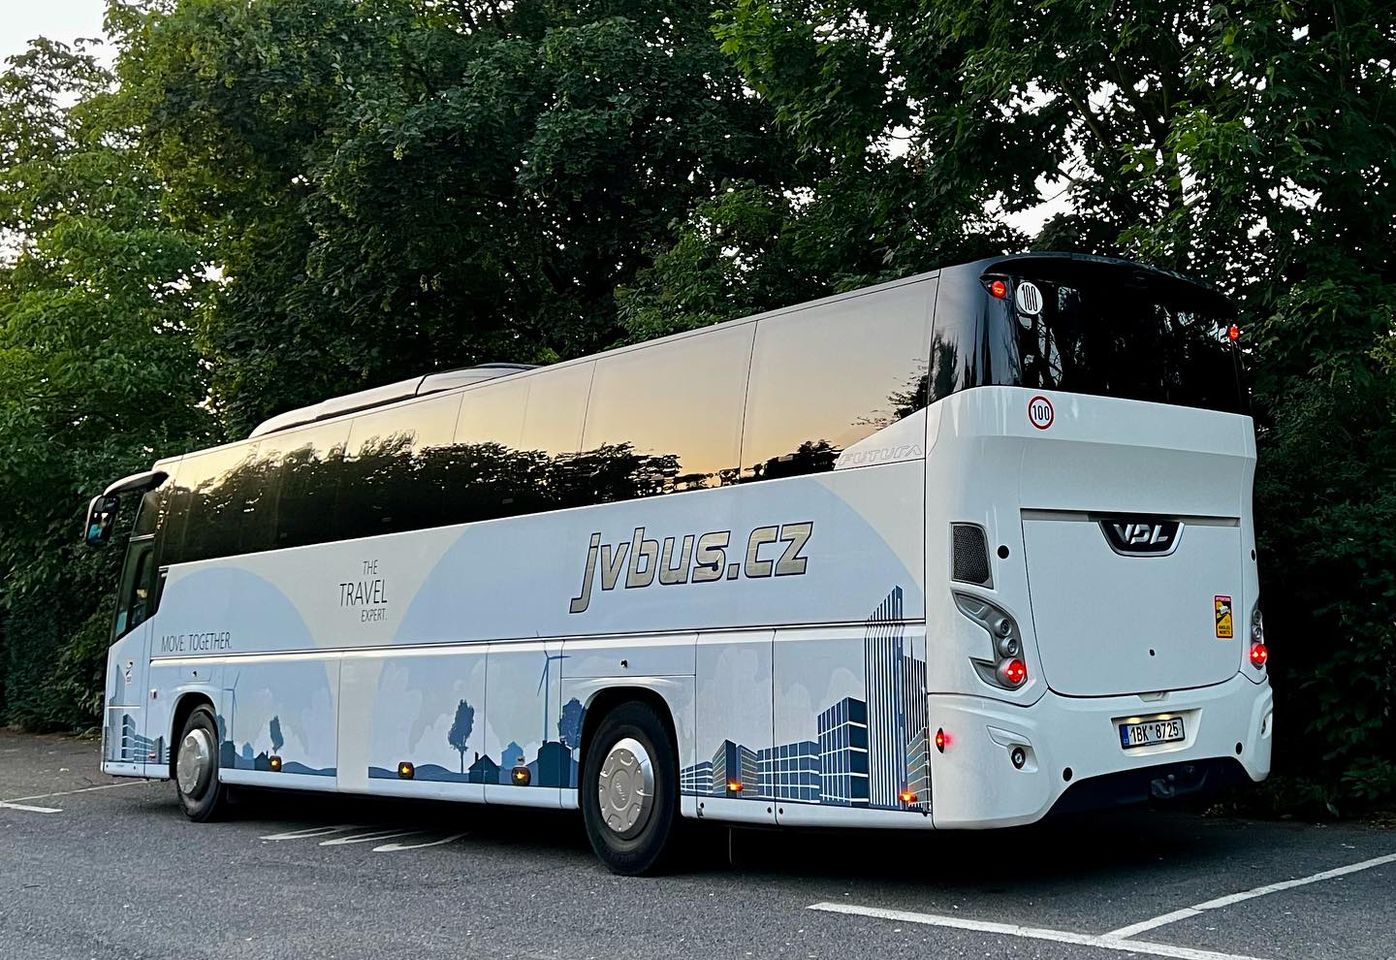 Autobusová doprava JVBUS pro vaše školní výlety v Brně